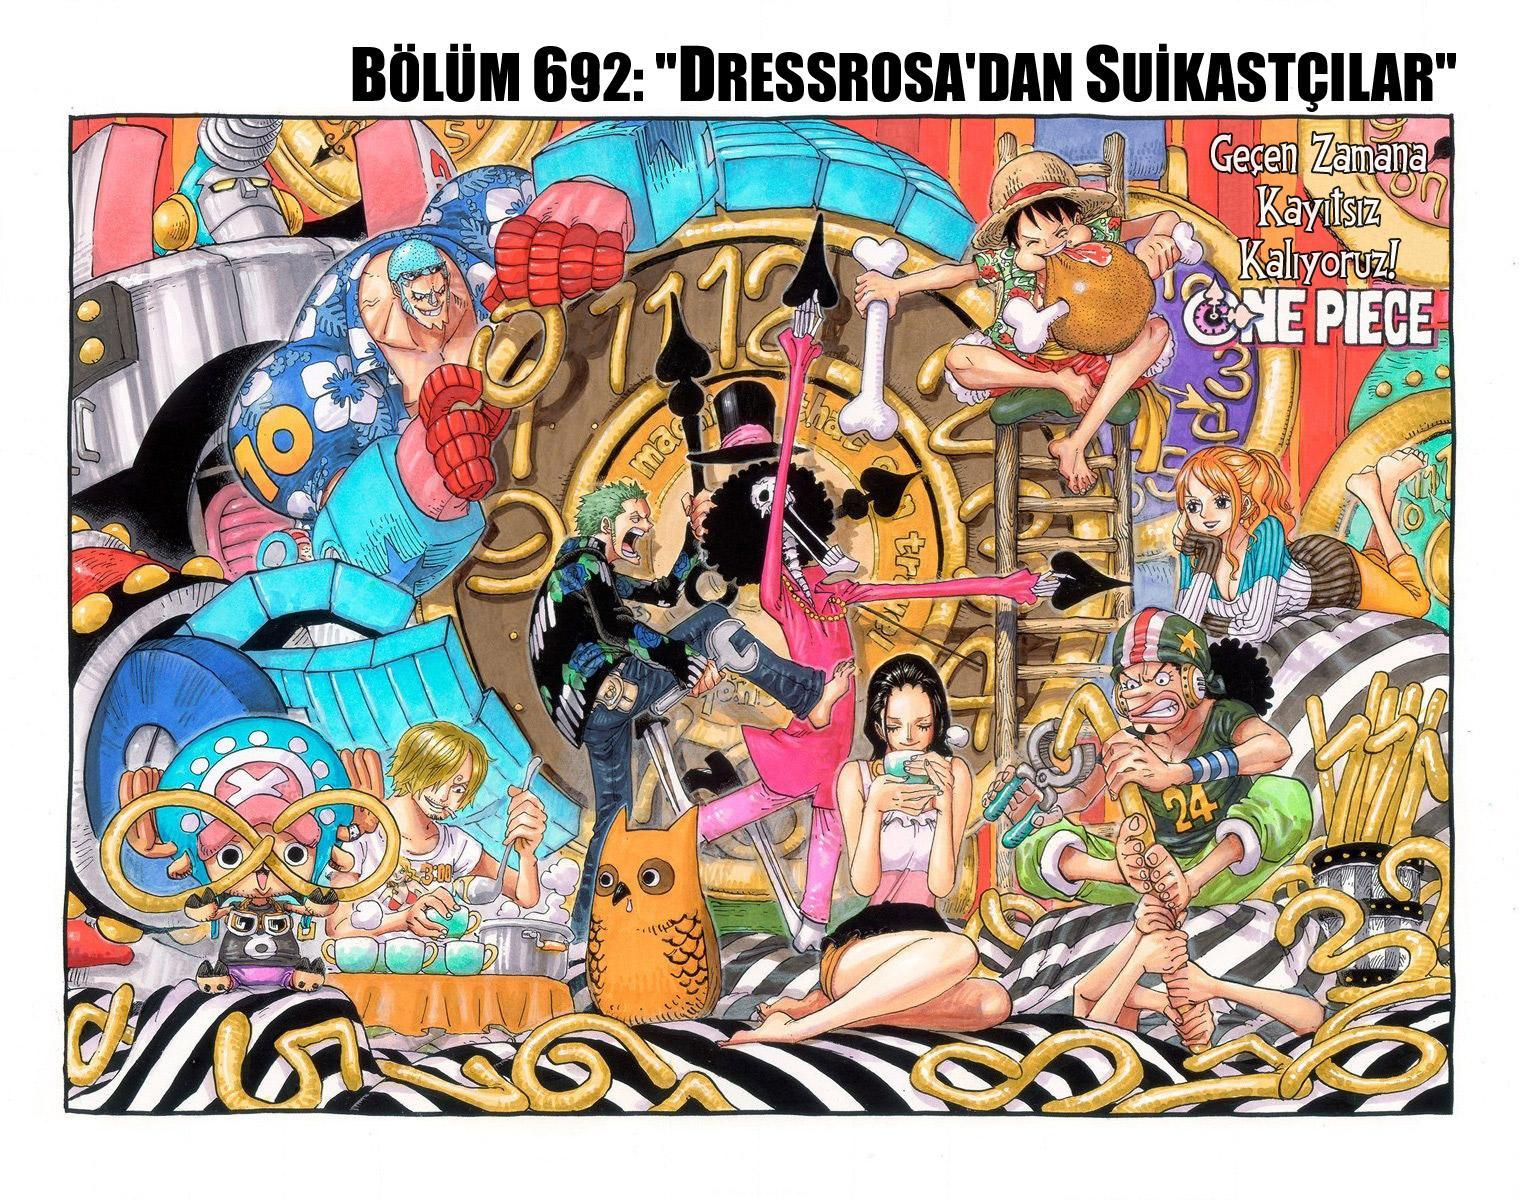 One Piece [Renkli] mangasının 692 bölümünün 2. sayfasını okuyorsunuz.